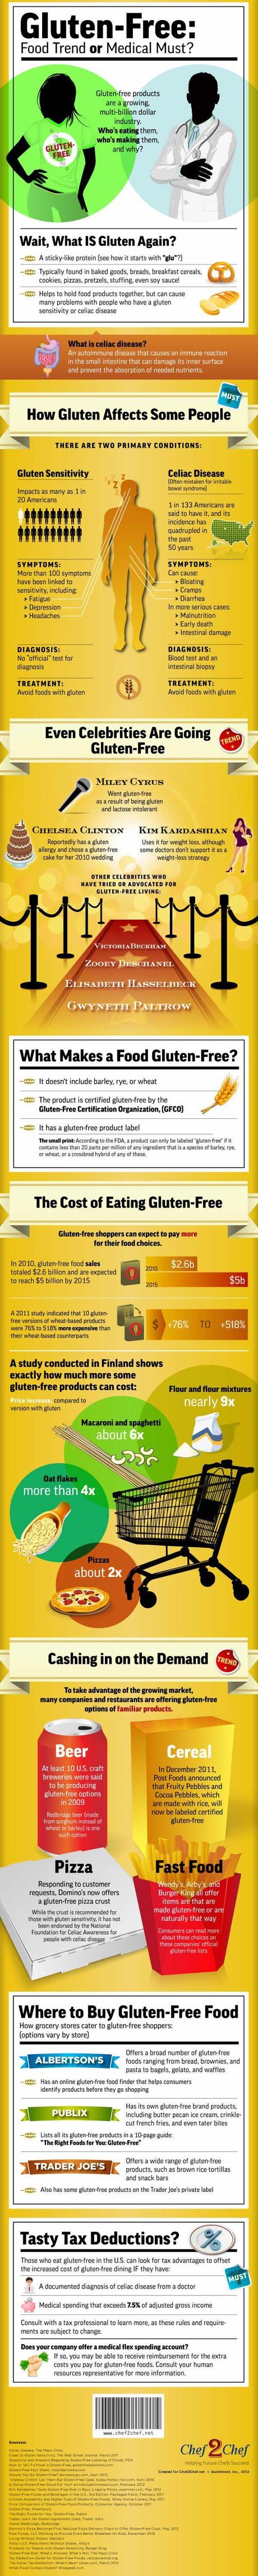 Gluten Free - Infographic